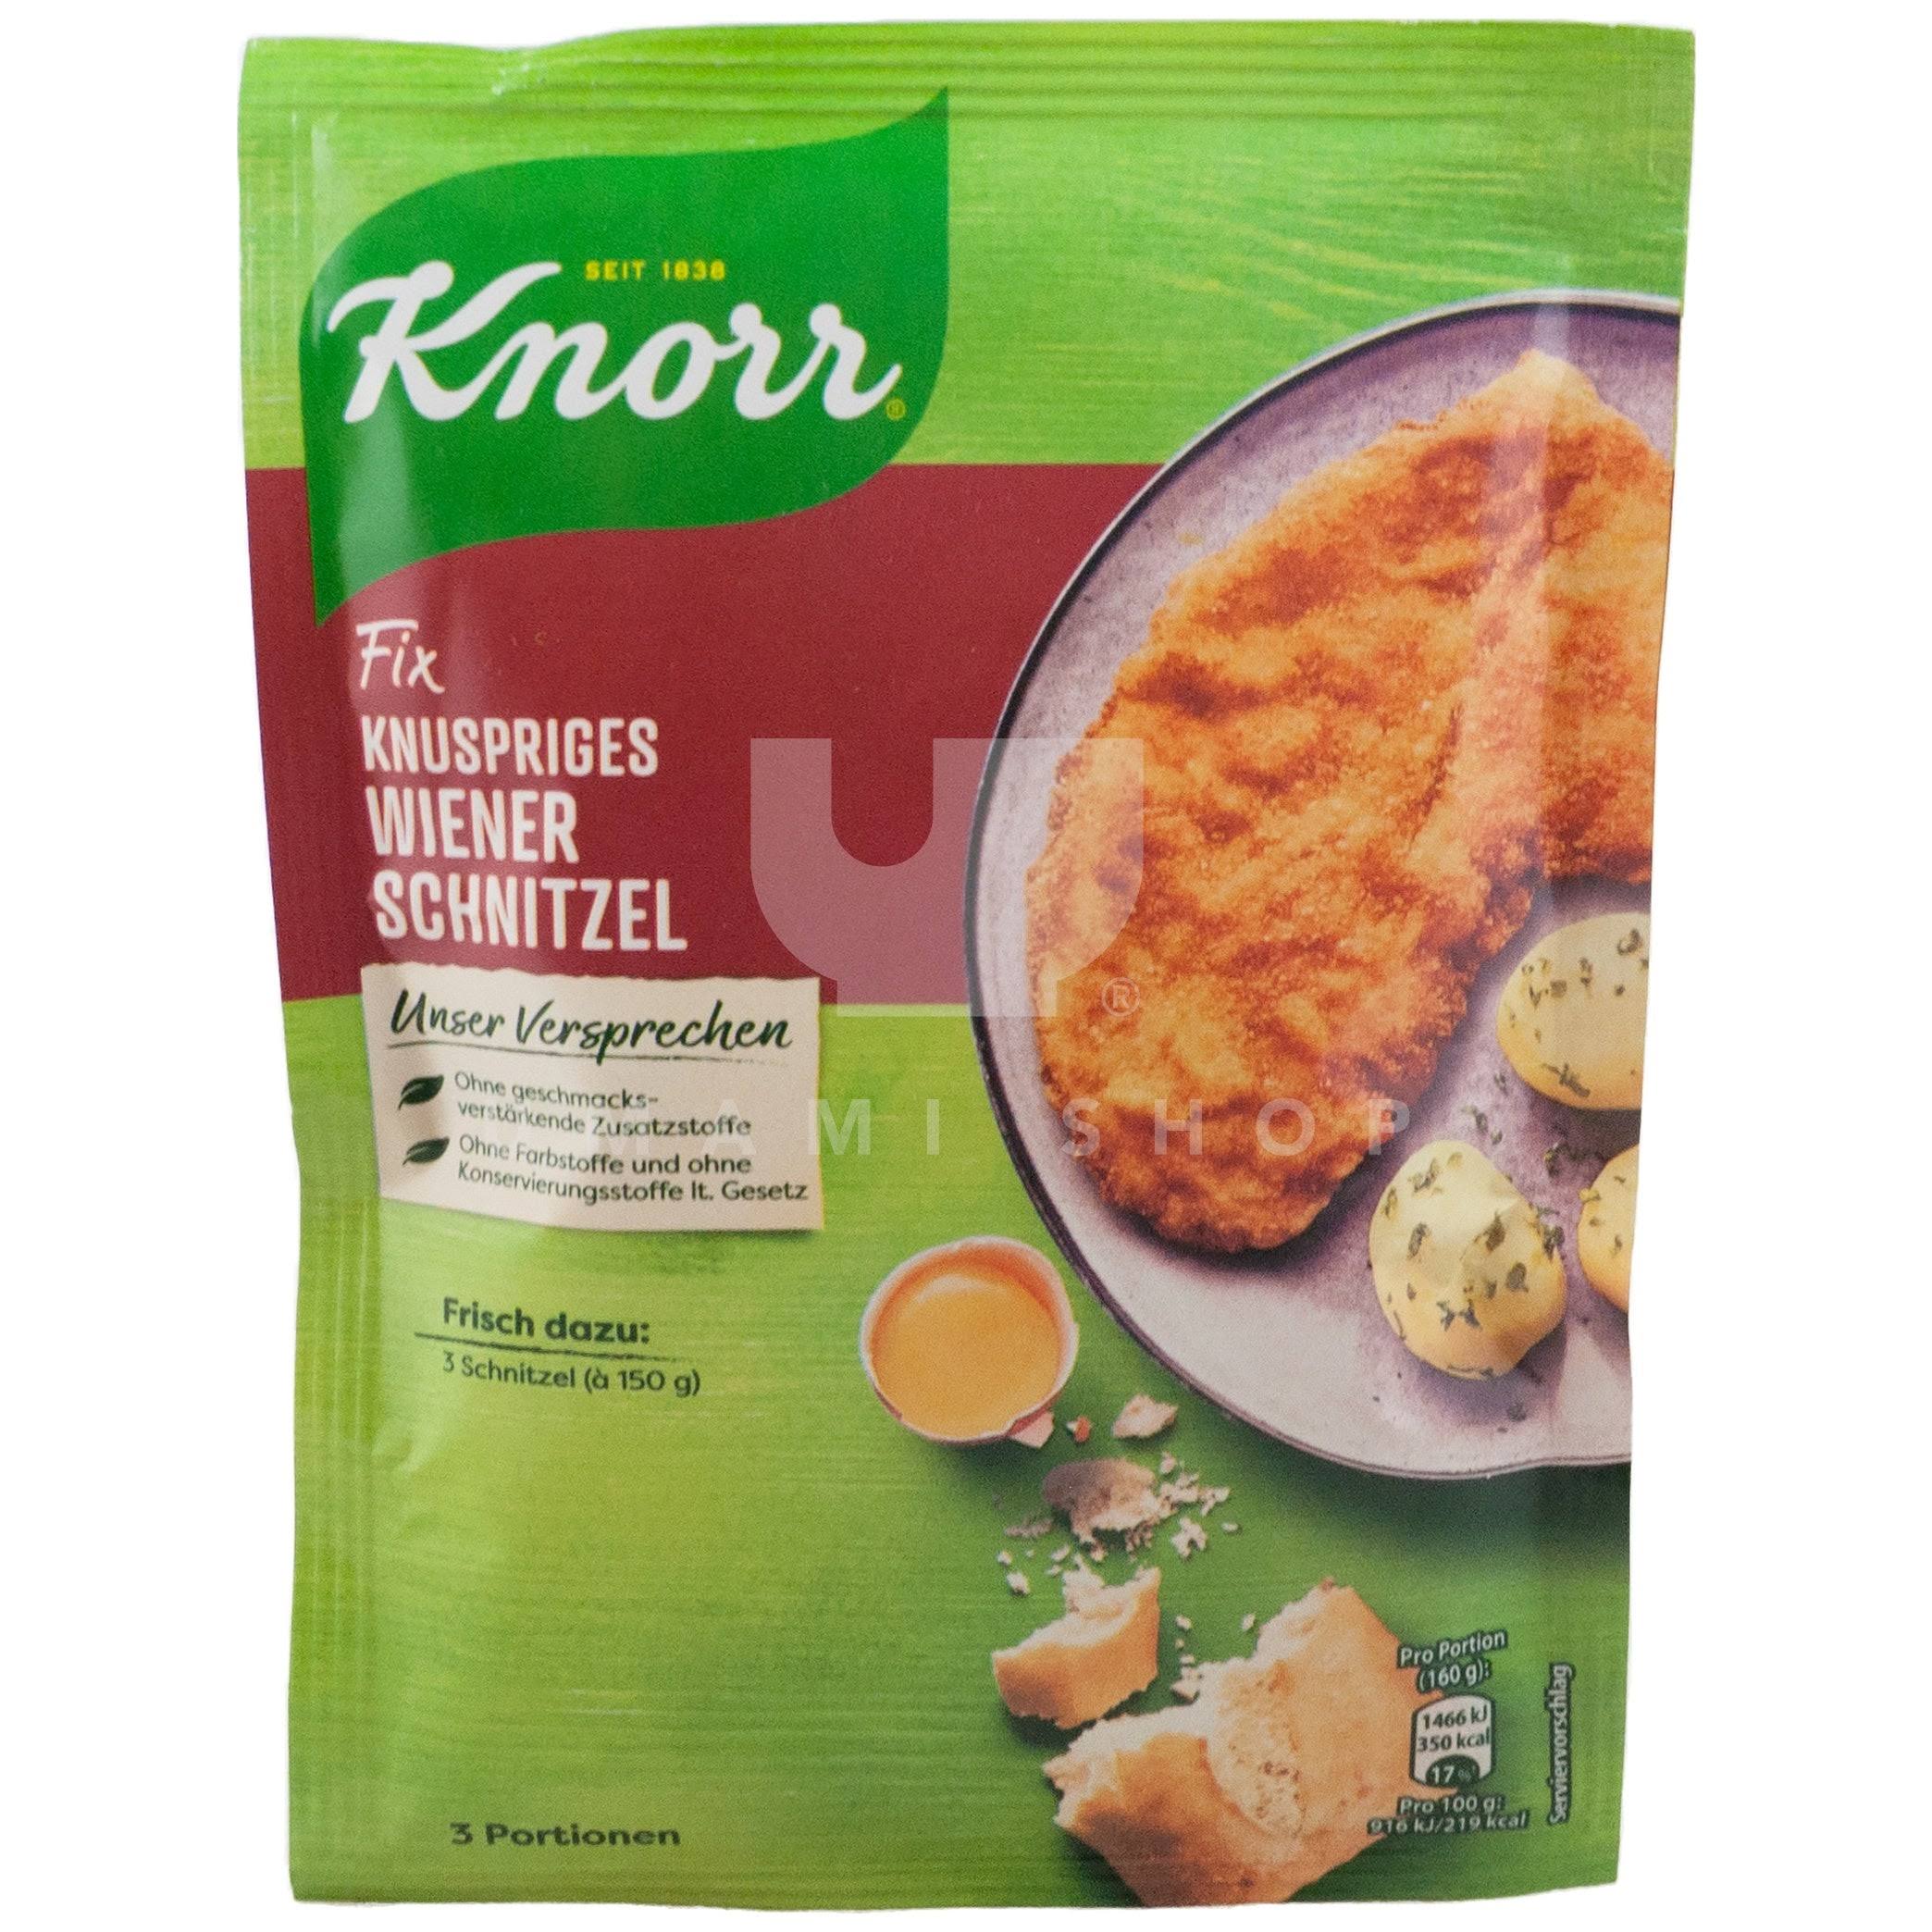 Knorr Fix Crunchy Wiener Schnitzel